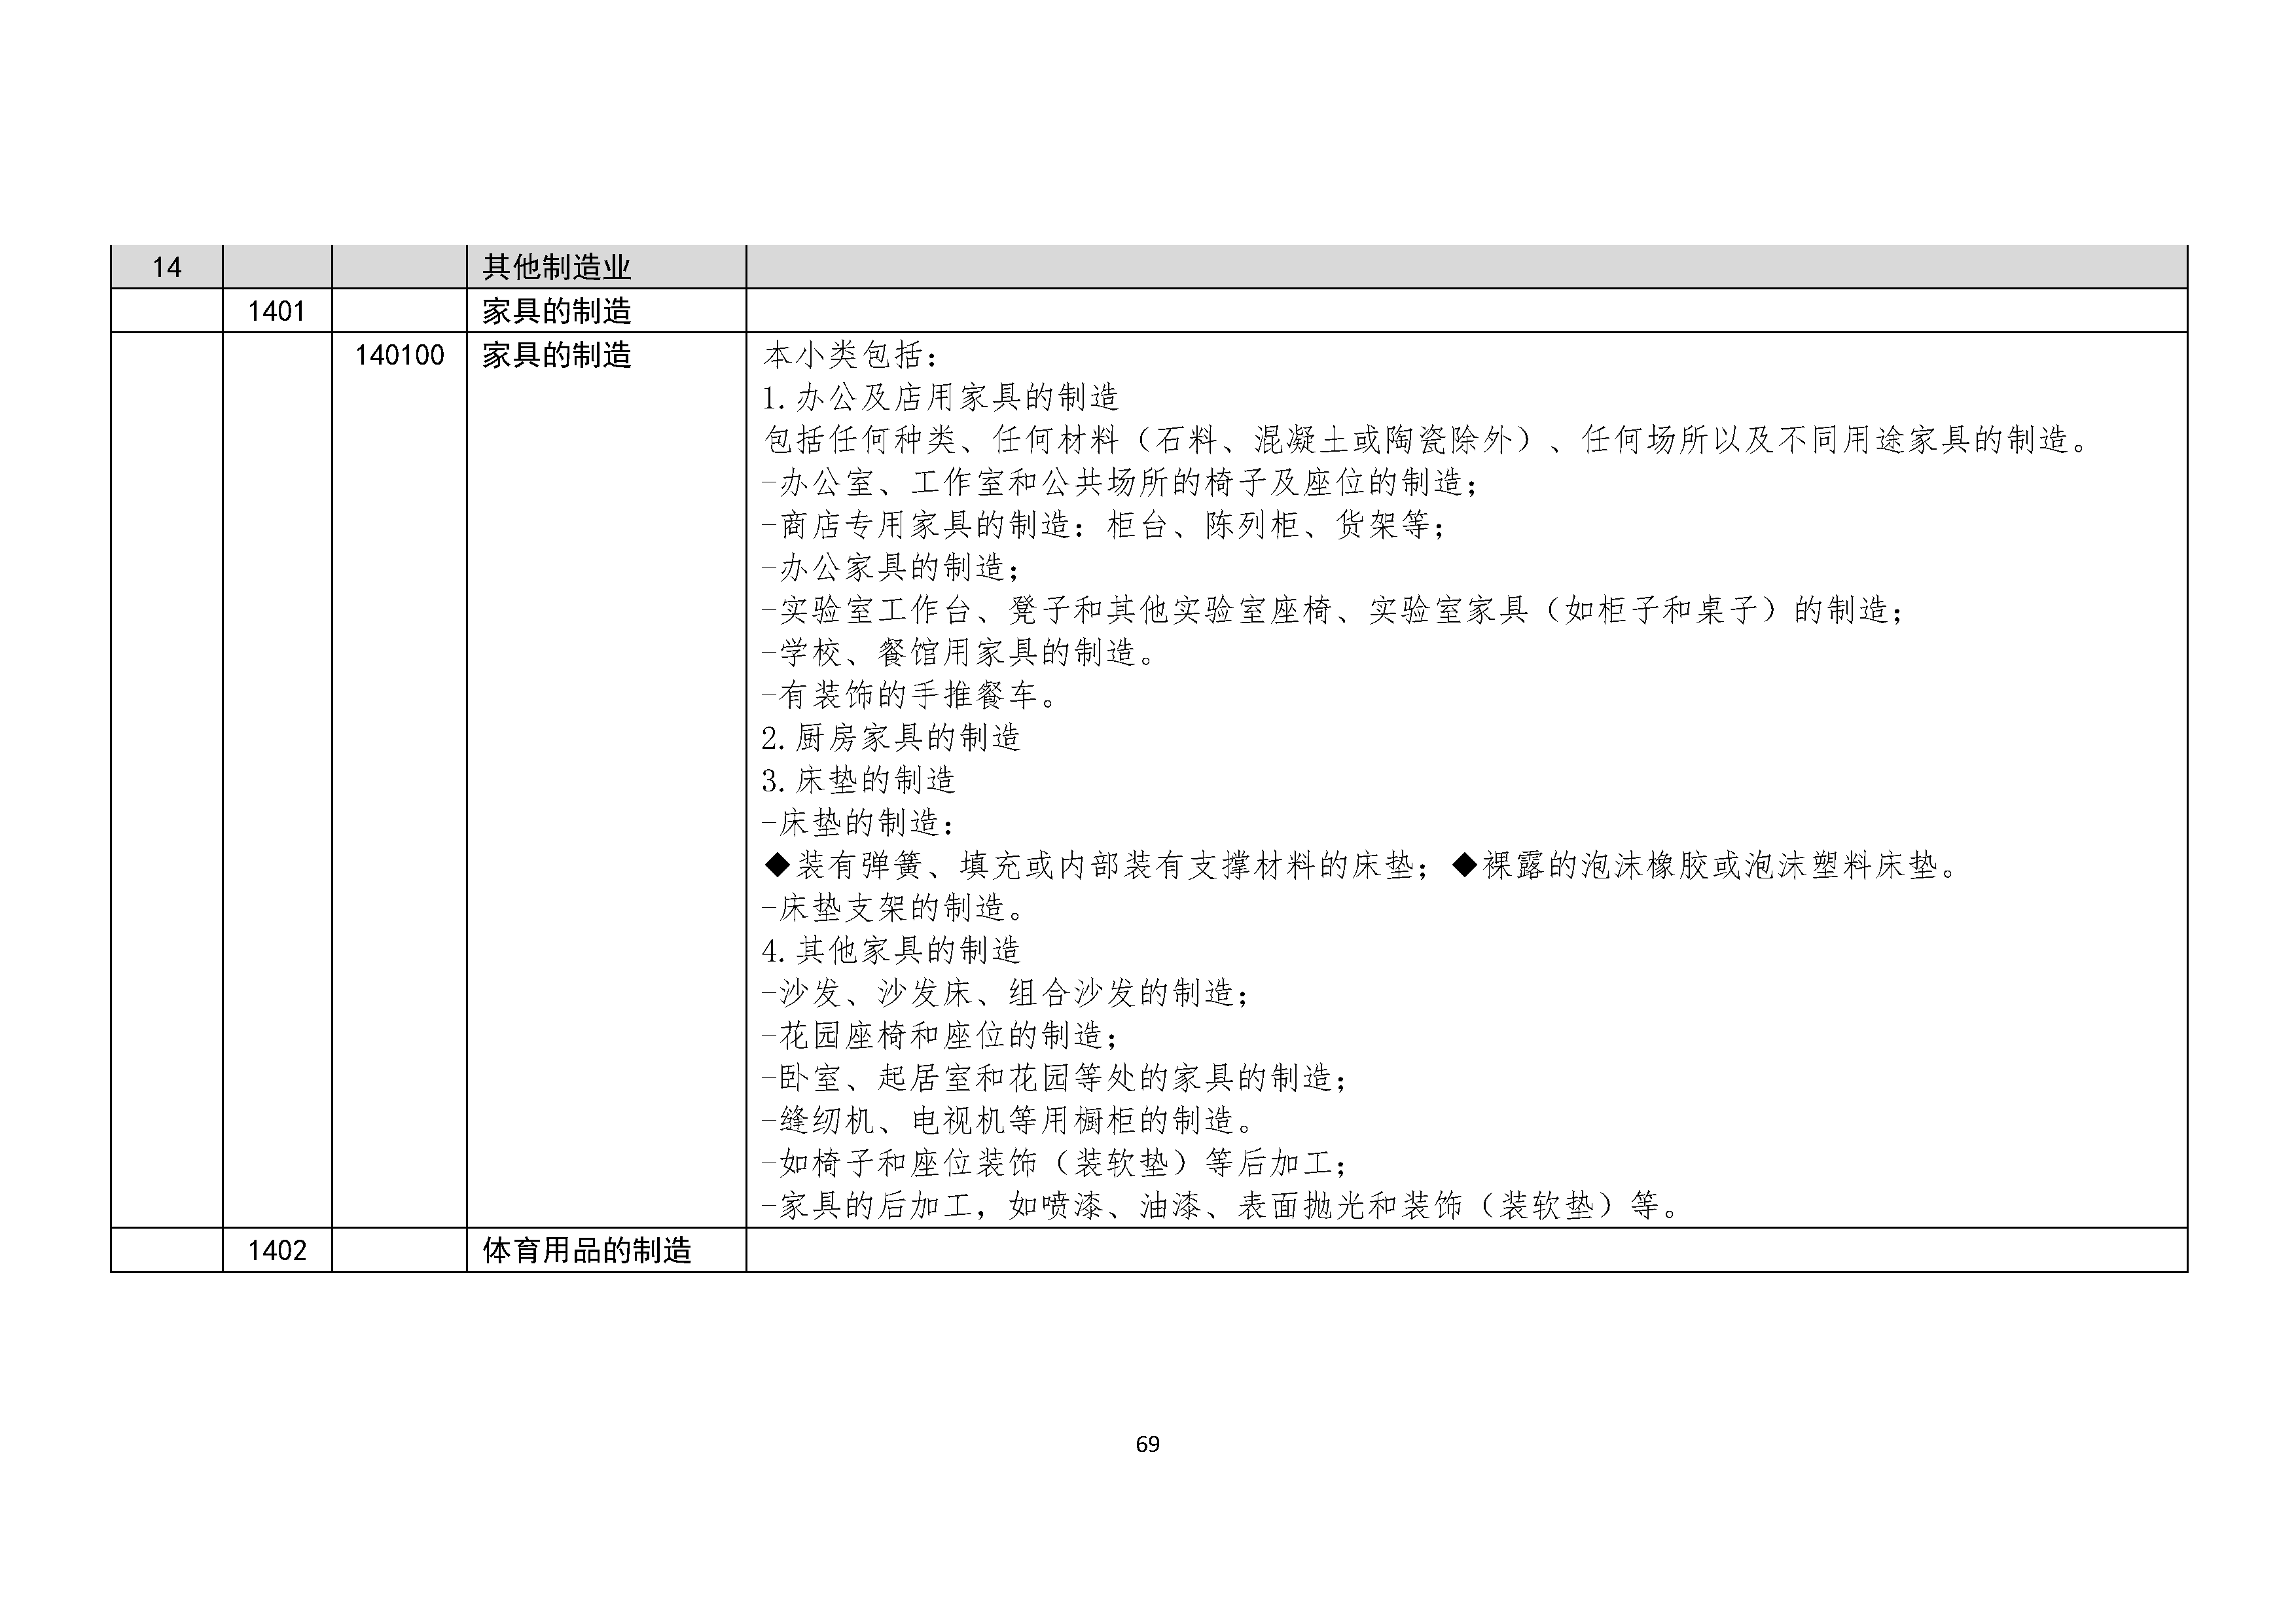 B.6《中国核能行业协会供应商评价供应商分类及产品专业范围划分规定》_页面_070.png